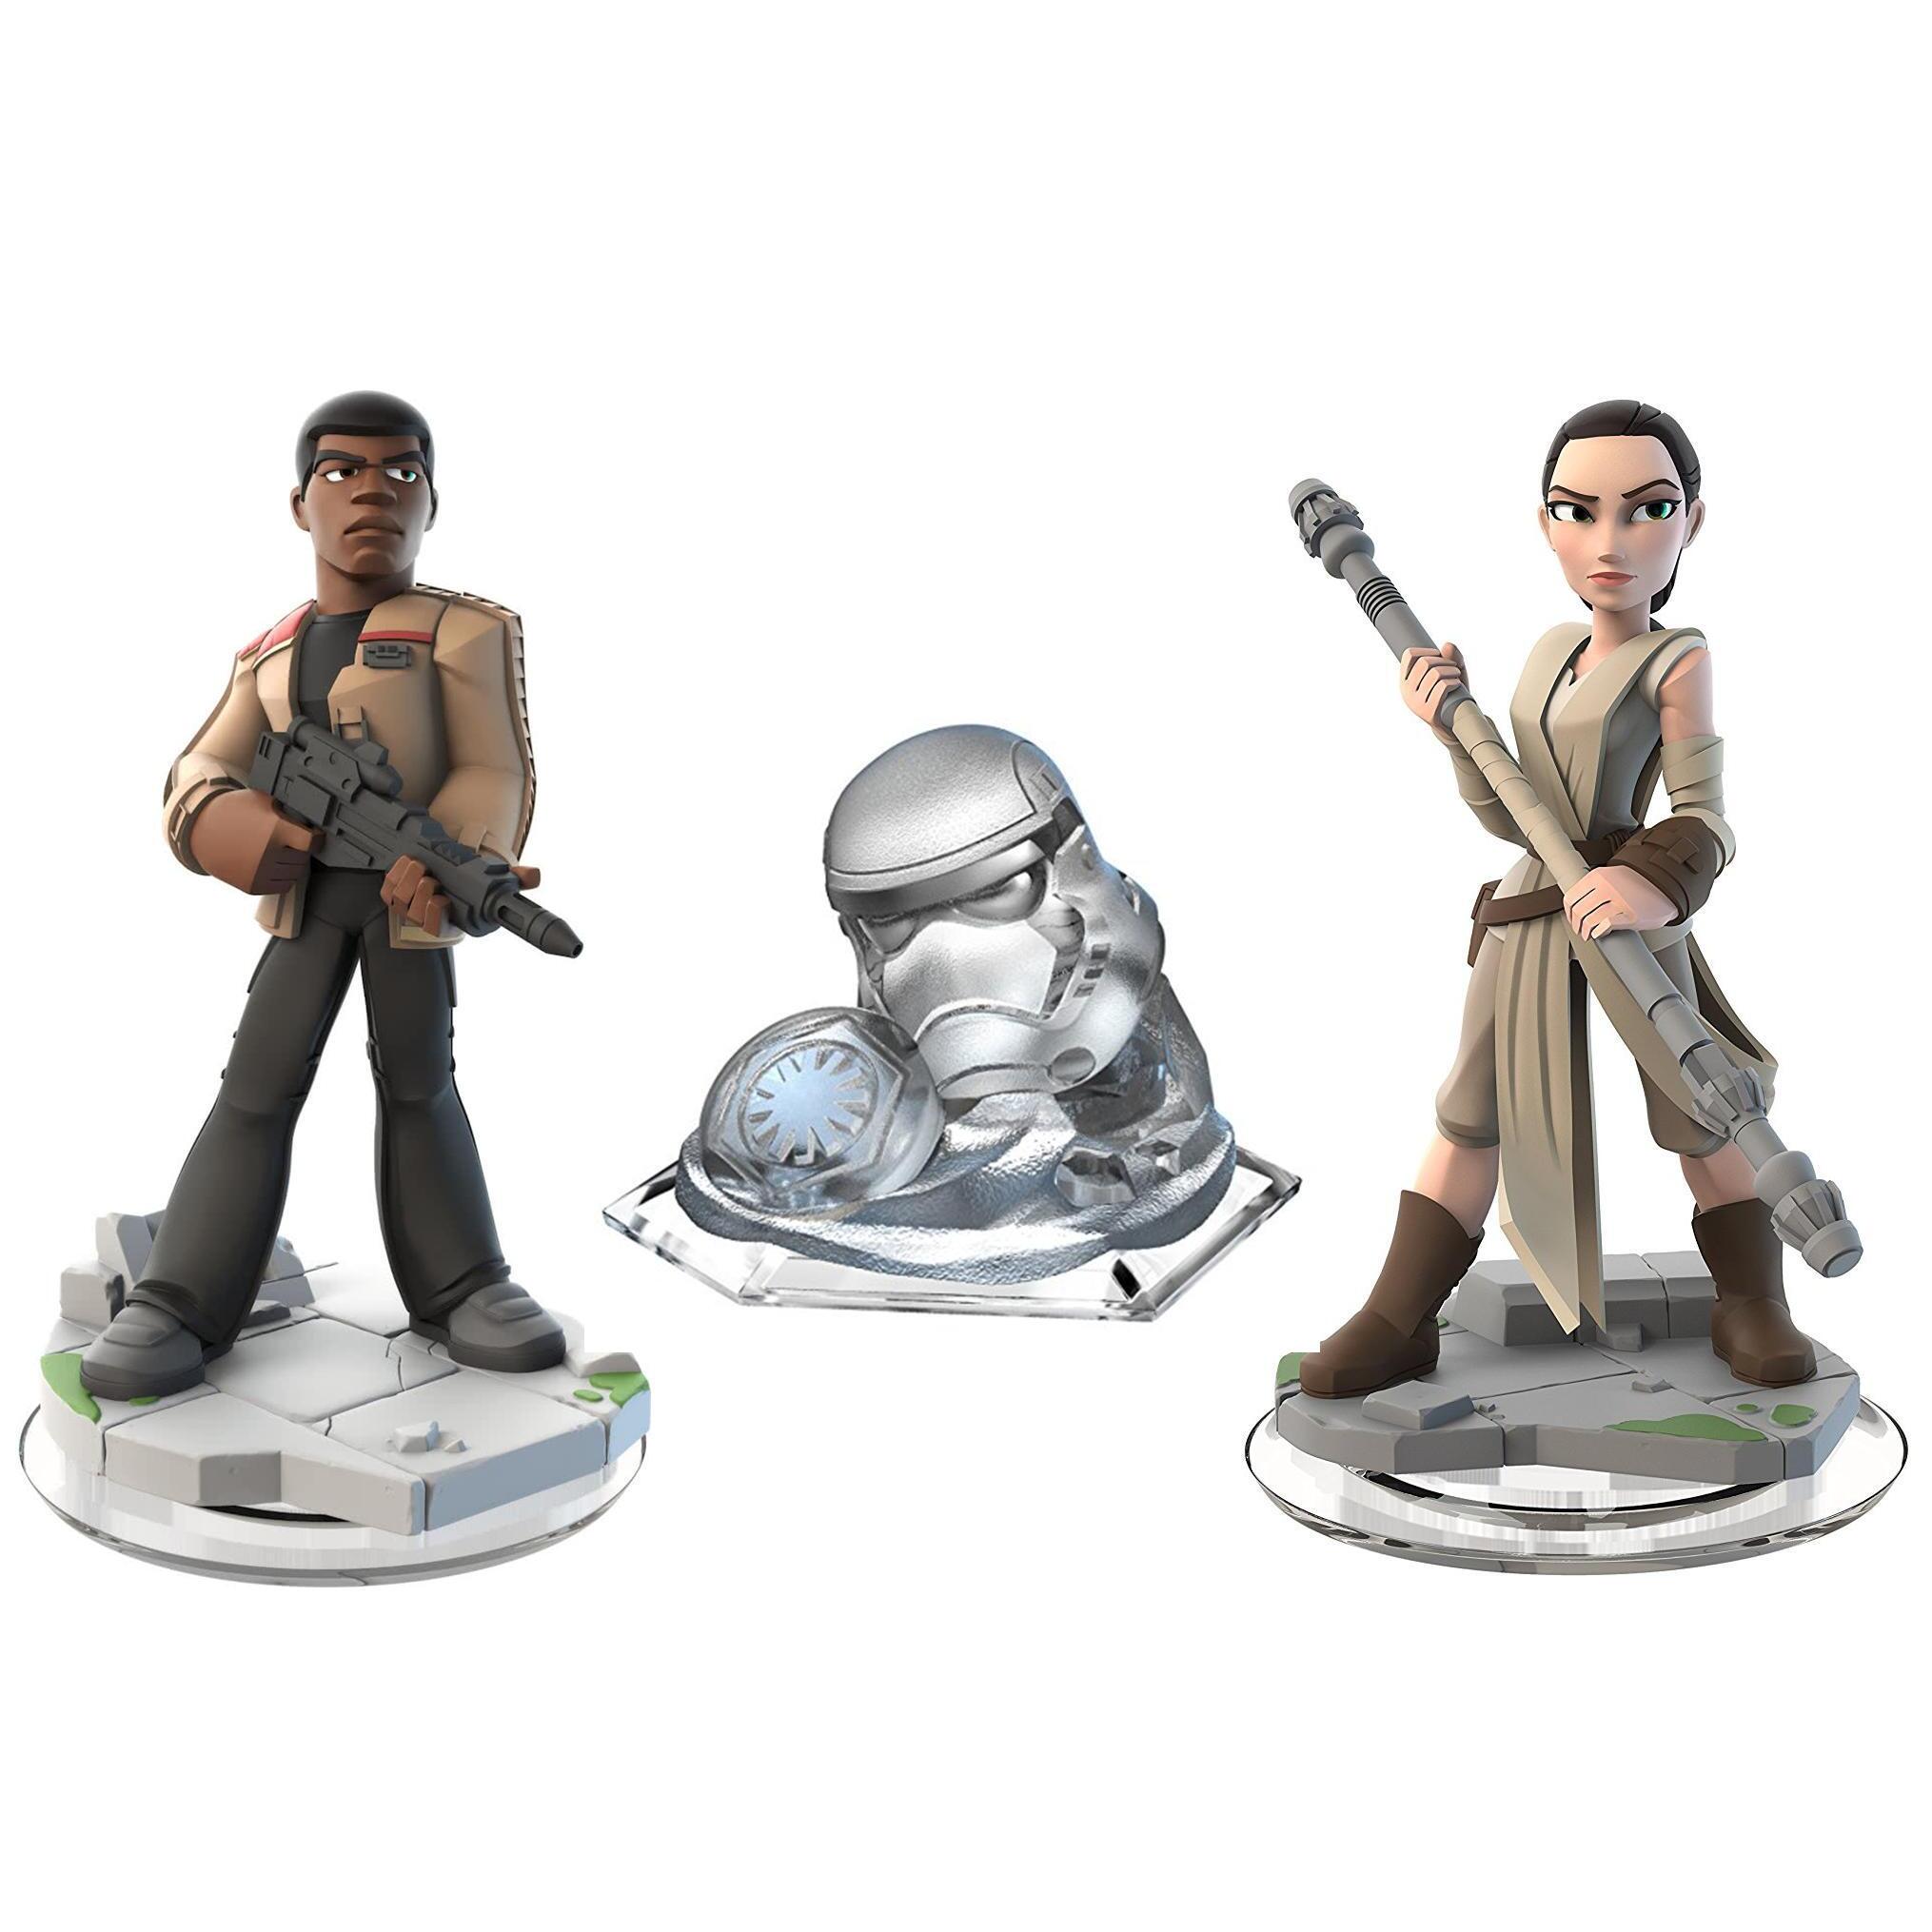 Invloedrijk metaal Monnik Star Wars The Force Awakens Play Set Pack Disney Infinity 3.0 kopen?